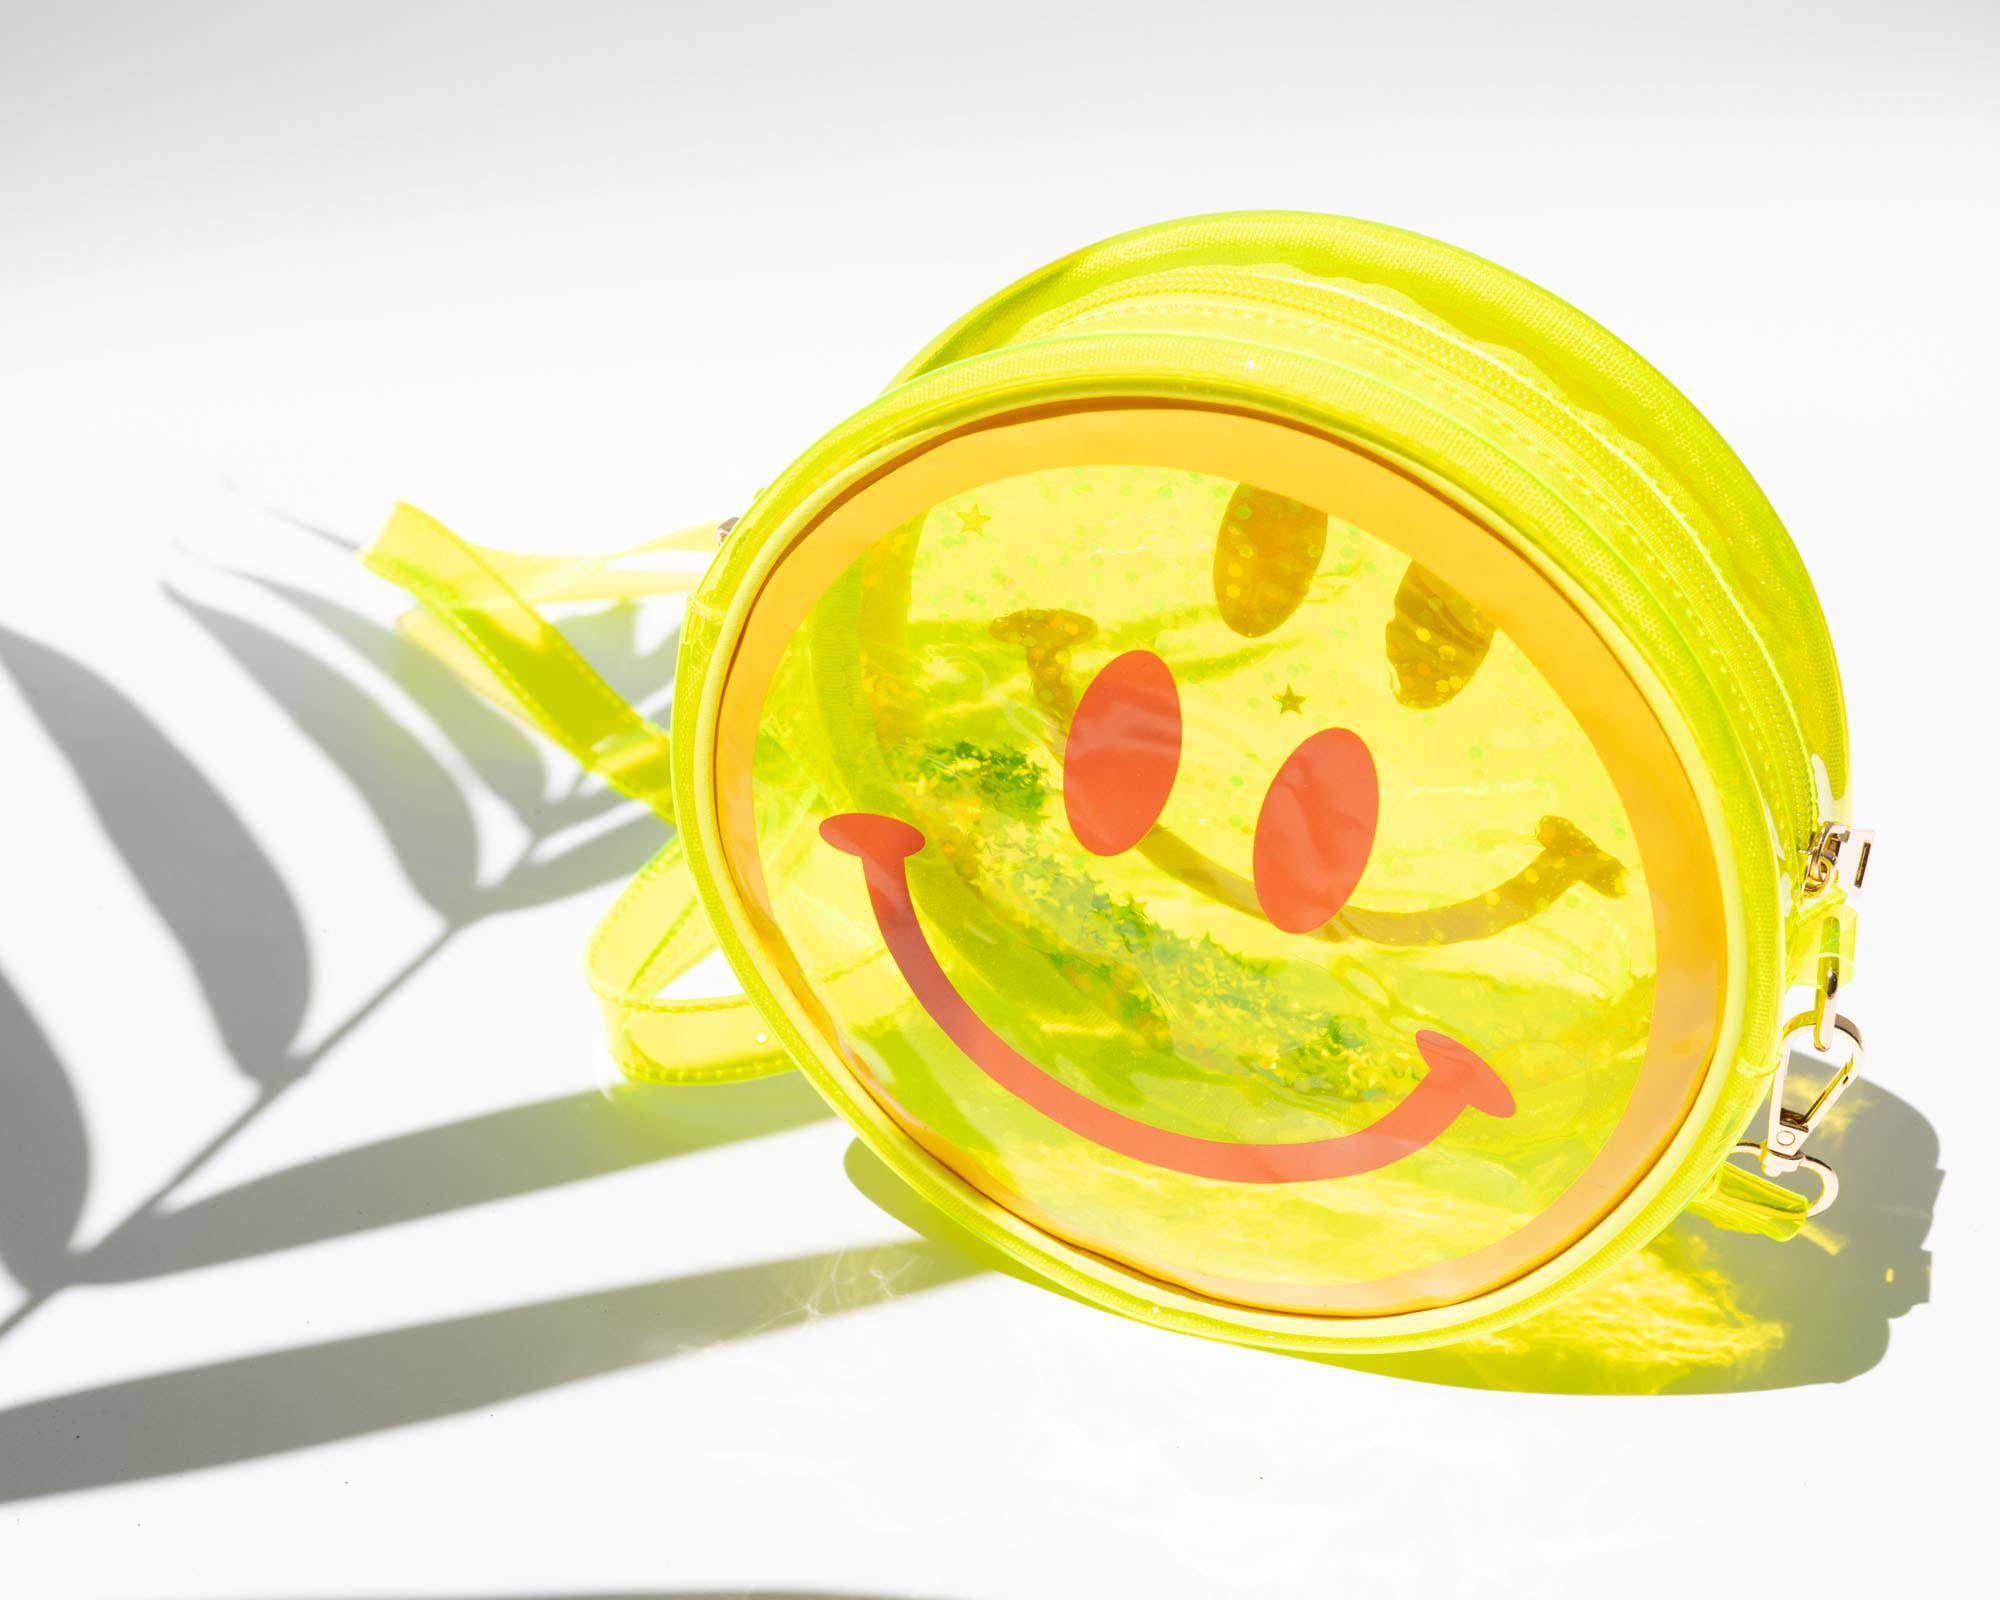 NEW! Jelly Handbag - Yellow Smiley Face 🙂